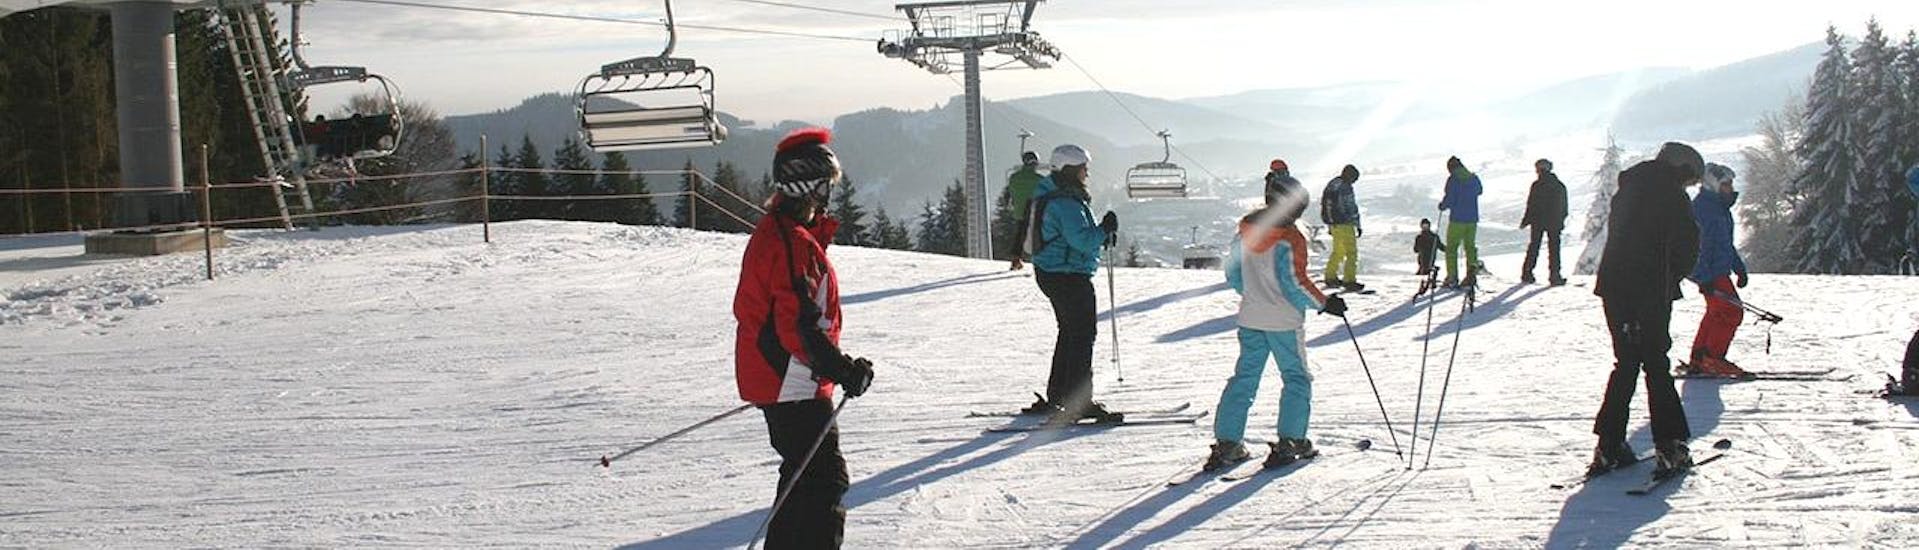 Een groep tieners deelt de piste met andere skiërs tijdens de cursus Snowboardlessen voor Tieners (13-17 j.) - Hele dag georganiseerd door Skischule Snow & Bike Factory Willingen.